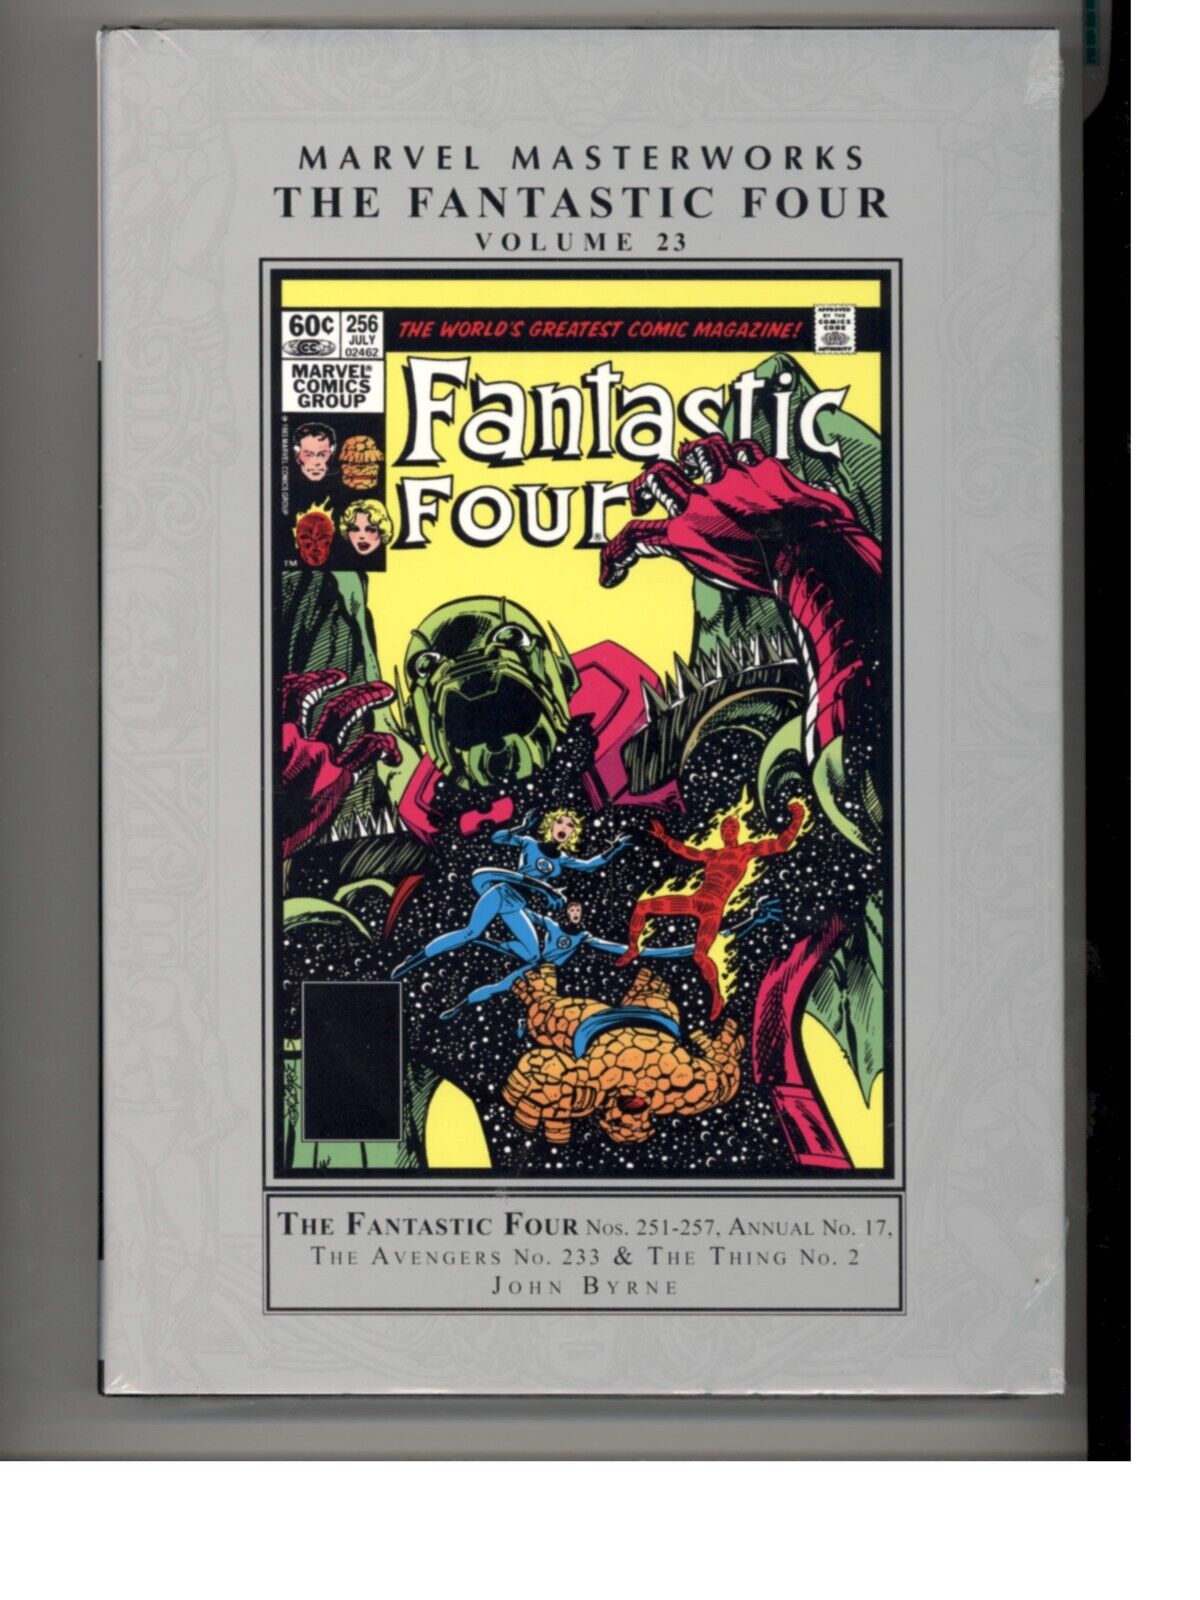 Marvel Masterworks Fantastic Four Vol 23 Nos 251-257  Hardcover NEW Sealed